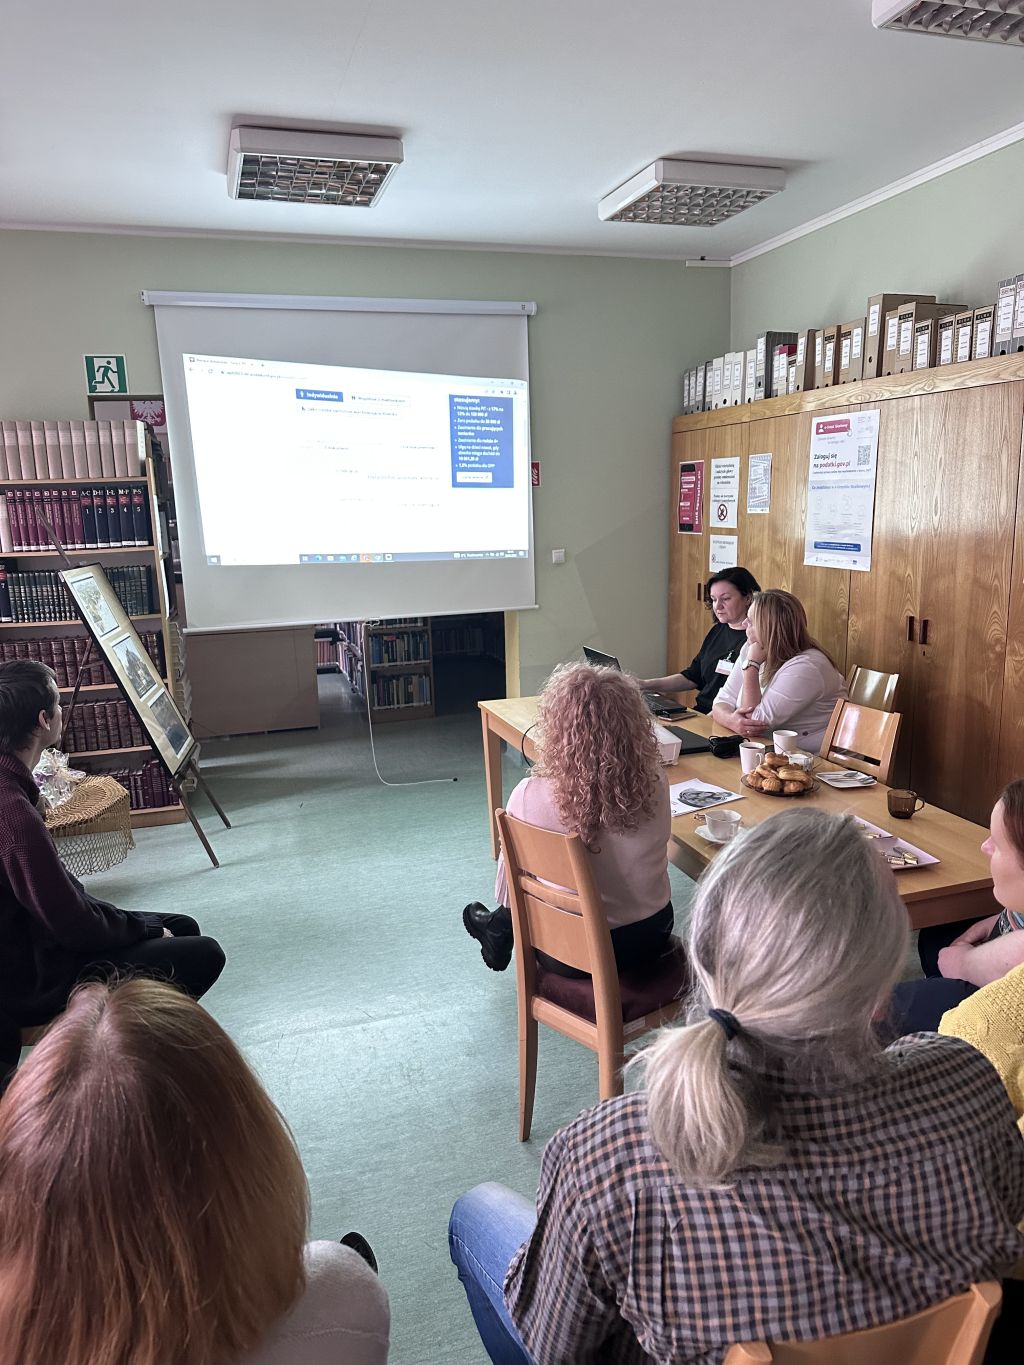 Szkolenie dla bibliotekarzy przeprowadzone przez pracowników Urzędu Skarbowego w Zgorzelcu.